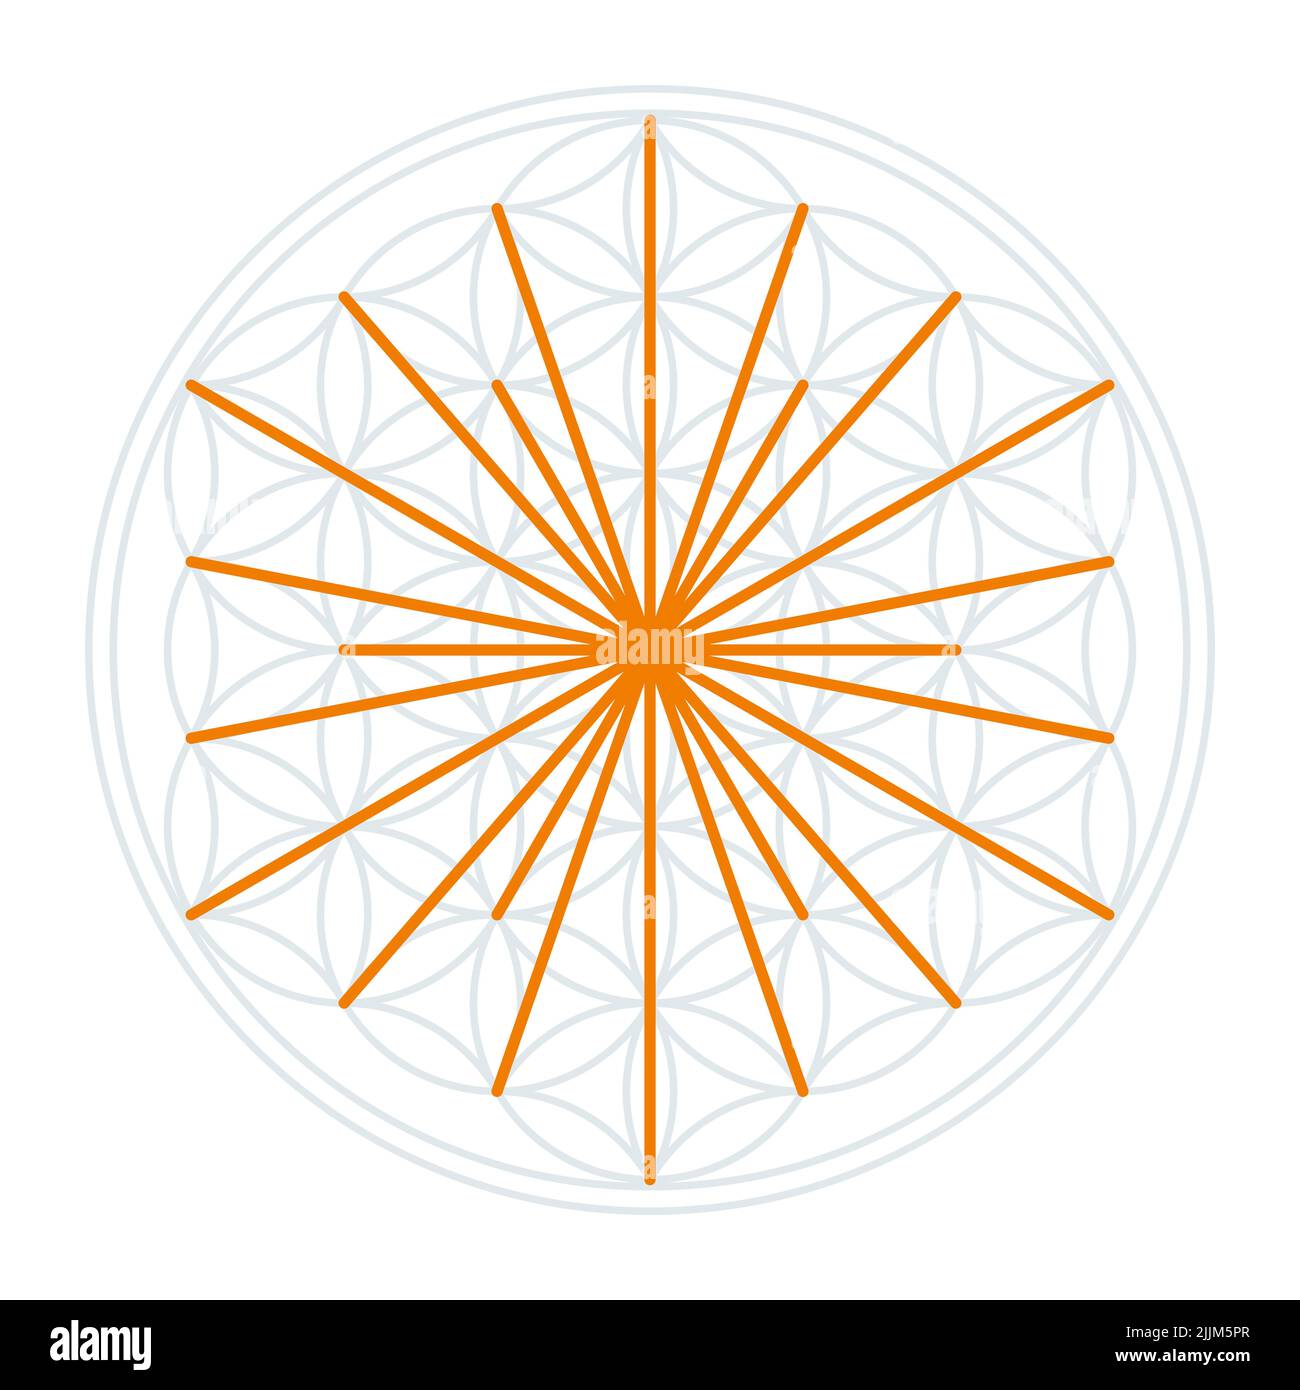 Simbolo del Sole nel Fiore della vita. Linee arancioni che simboleggiano i raggi del sole, derivate dai punti di intersezione dei cerchi sovrapposti. Foto Stock